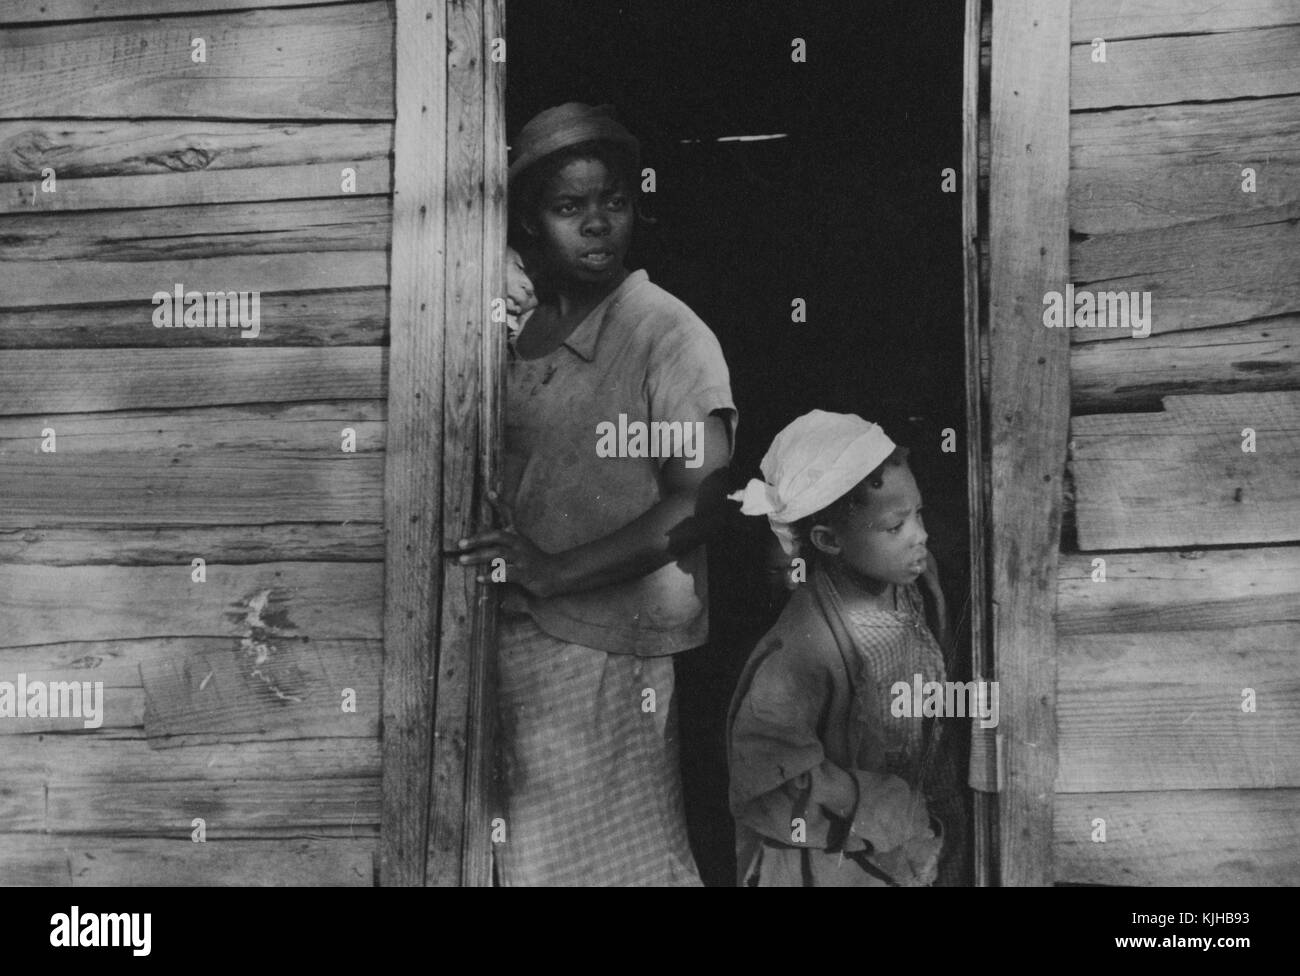 Ein Foto von einem Teenager Mädchen und einem jungen Mädchen in einer Tür, sie sind die Kinder einer Erdbeere, Bauer, beide sind auf der Suche nach etwas außerhalb des Bildes, sie sind beide tragen gemusterte Kleider mit leichte Jacken über, das Haus ist eine bescheidene hölzerne Struktur, Hammond, Louisiana, 1935. Von der New York Public Library. Stockfoto